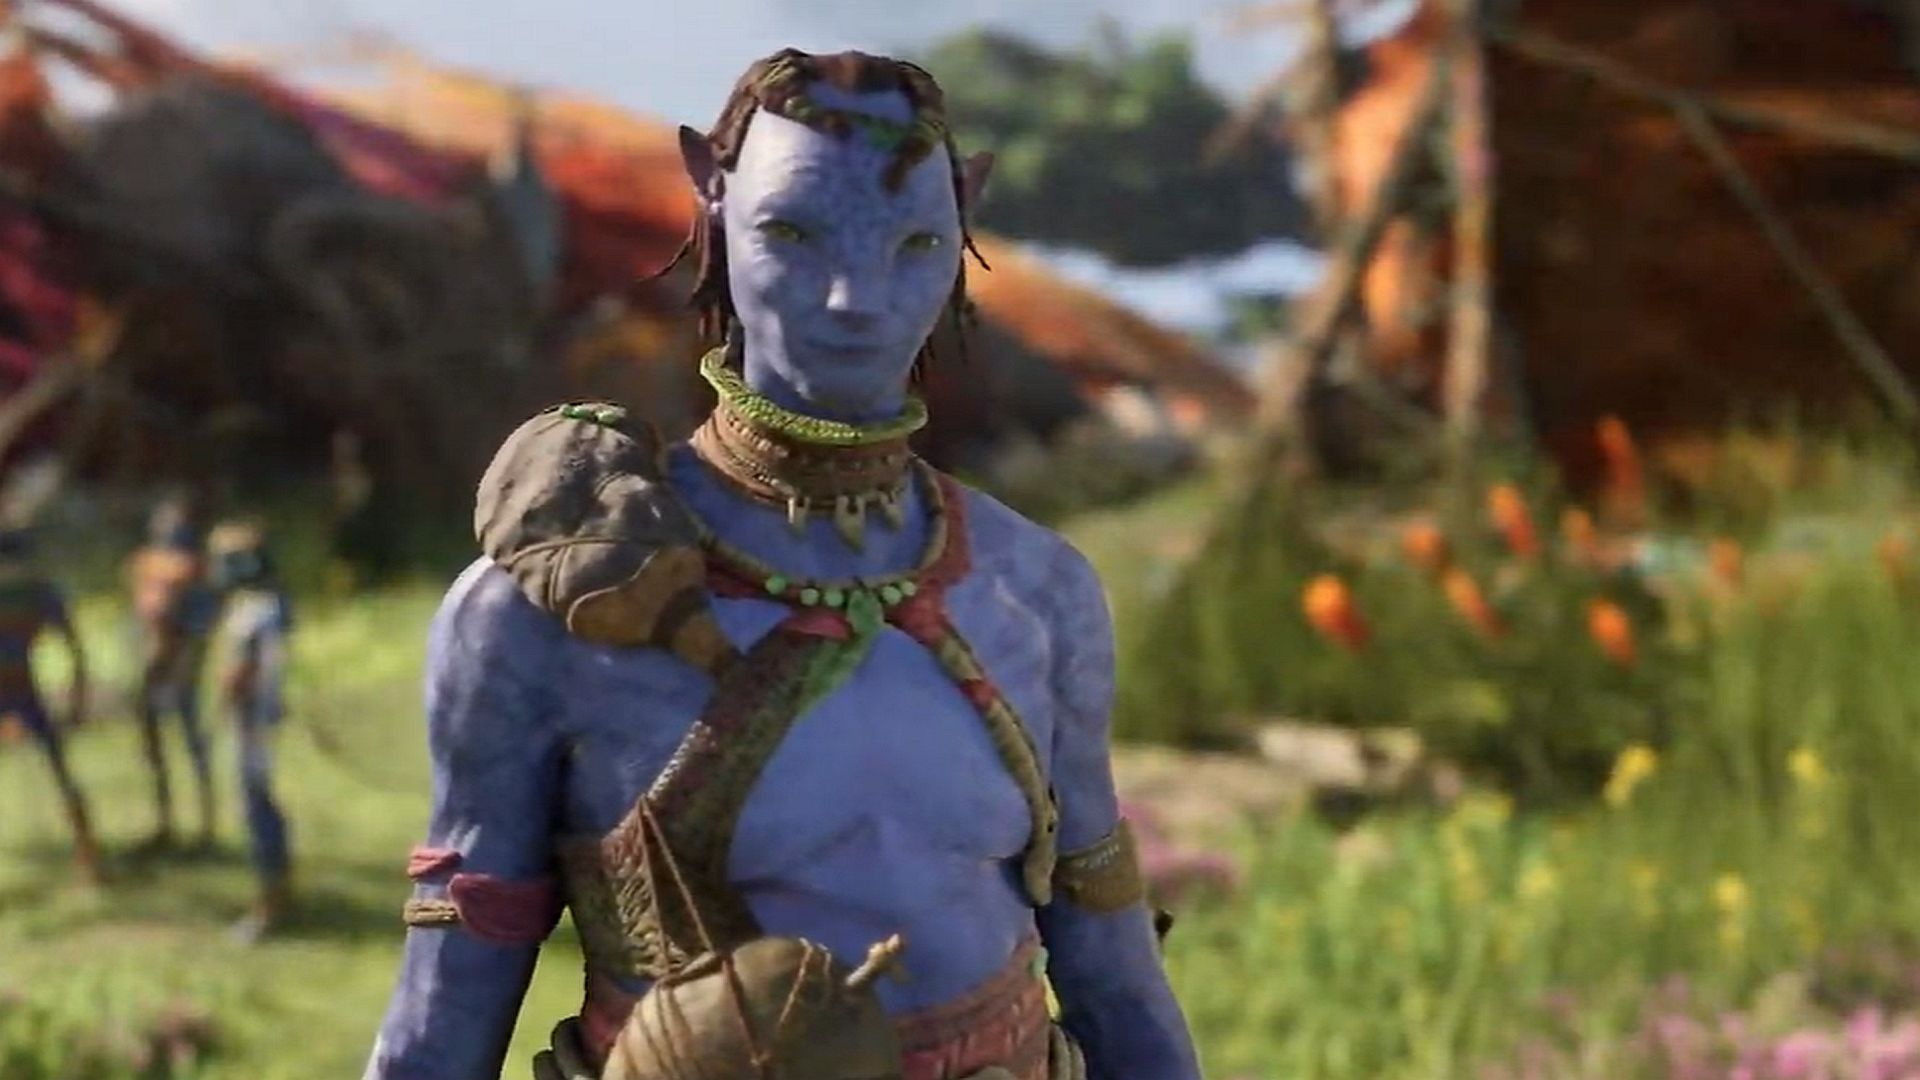 Tugtar Frontiers of Pandora ar chluiche Avatar Ubisoft, agus beidh sé amach an bhliain seo chugainn